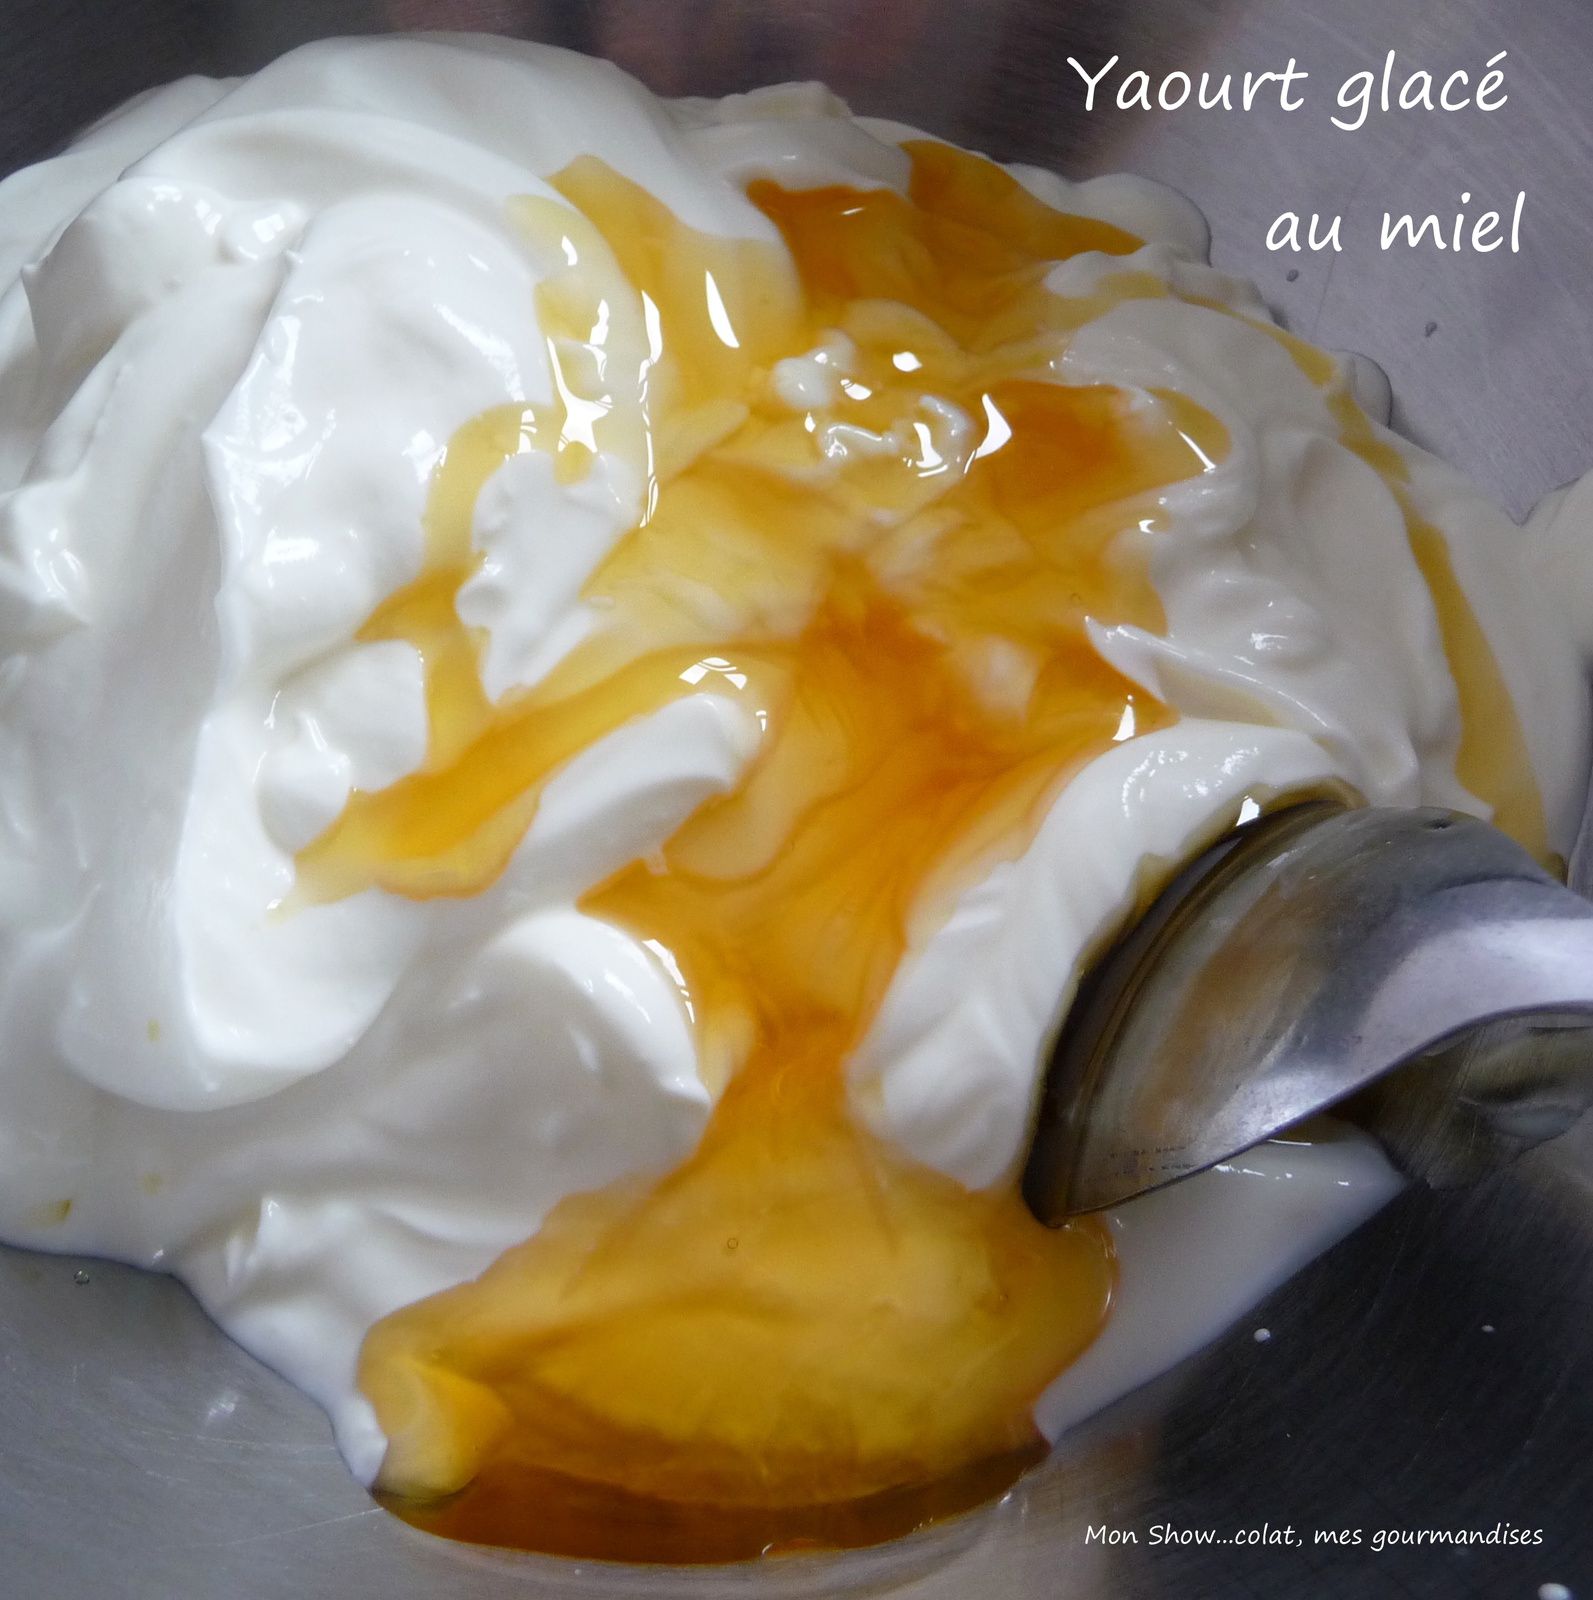 Yaourt glacé au miel  (Frozen yogurt)